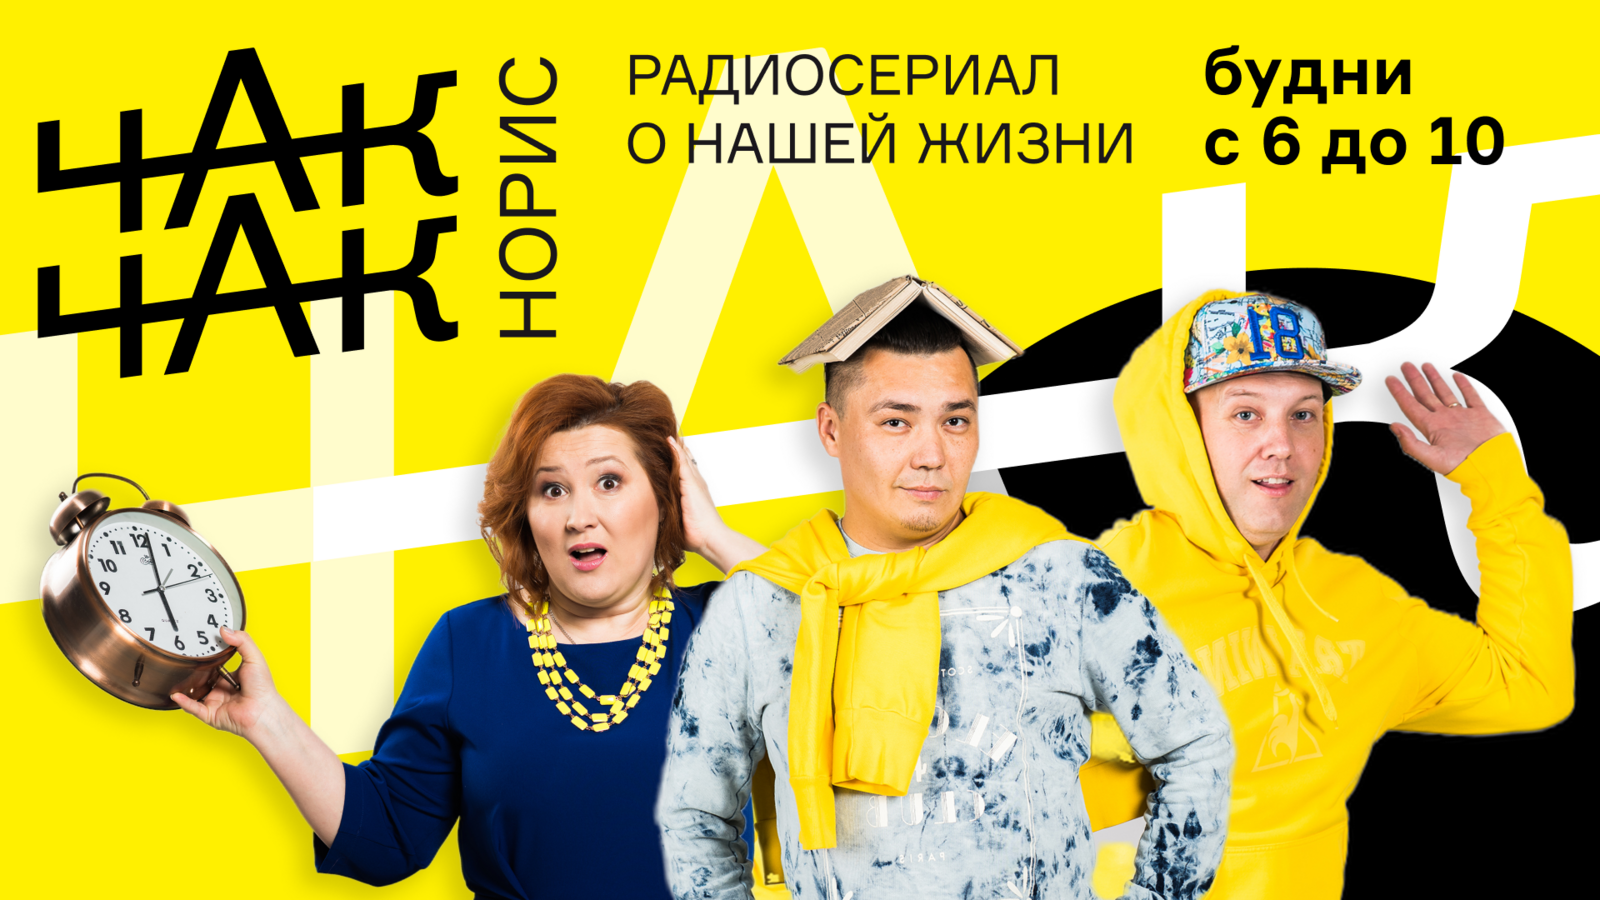 Радиосериал “Чак Чак Норрис” на Спутник ФМ признан лучшим  радиошоу в России